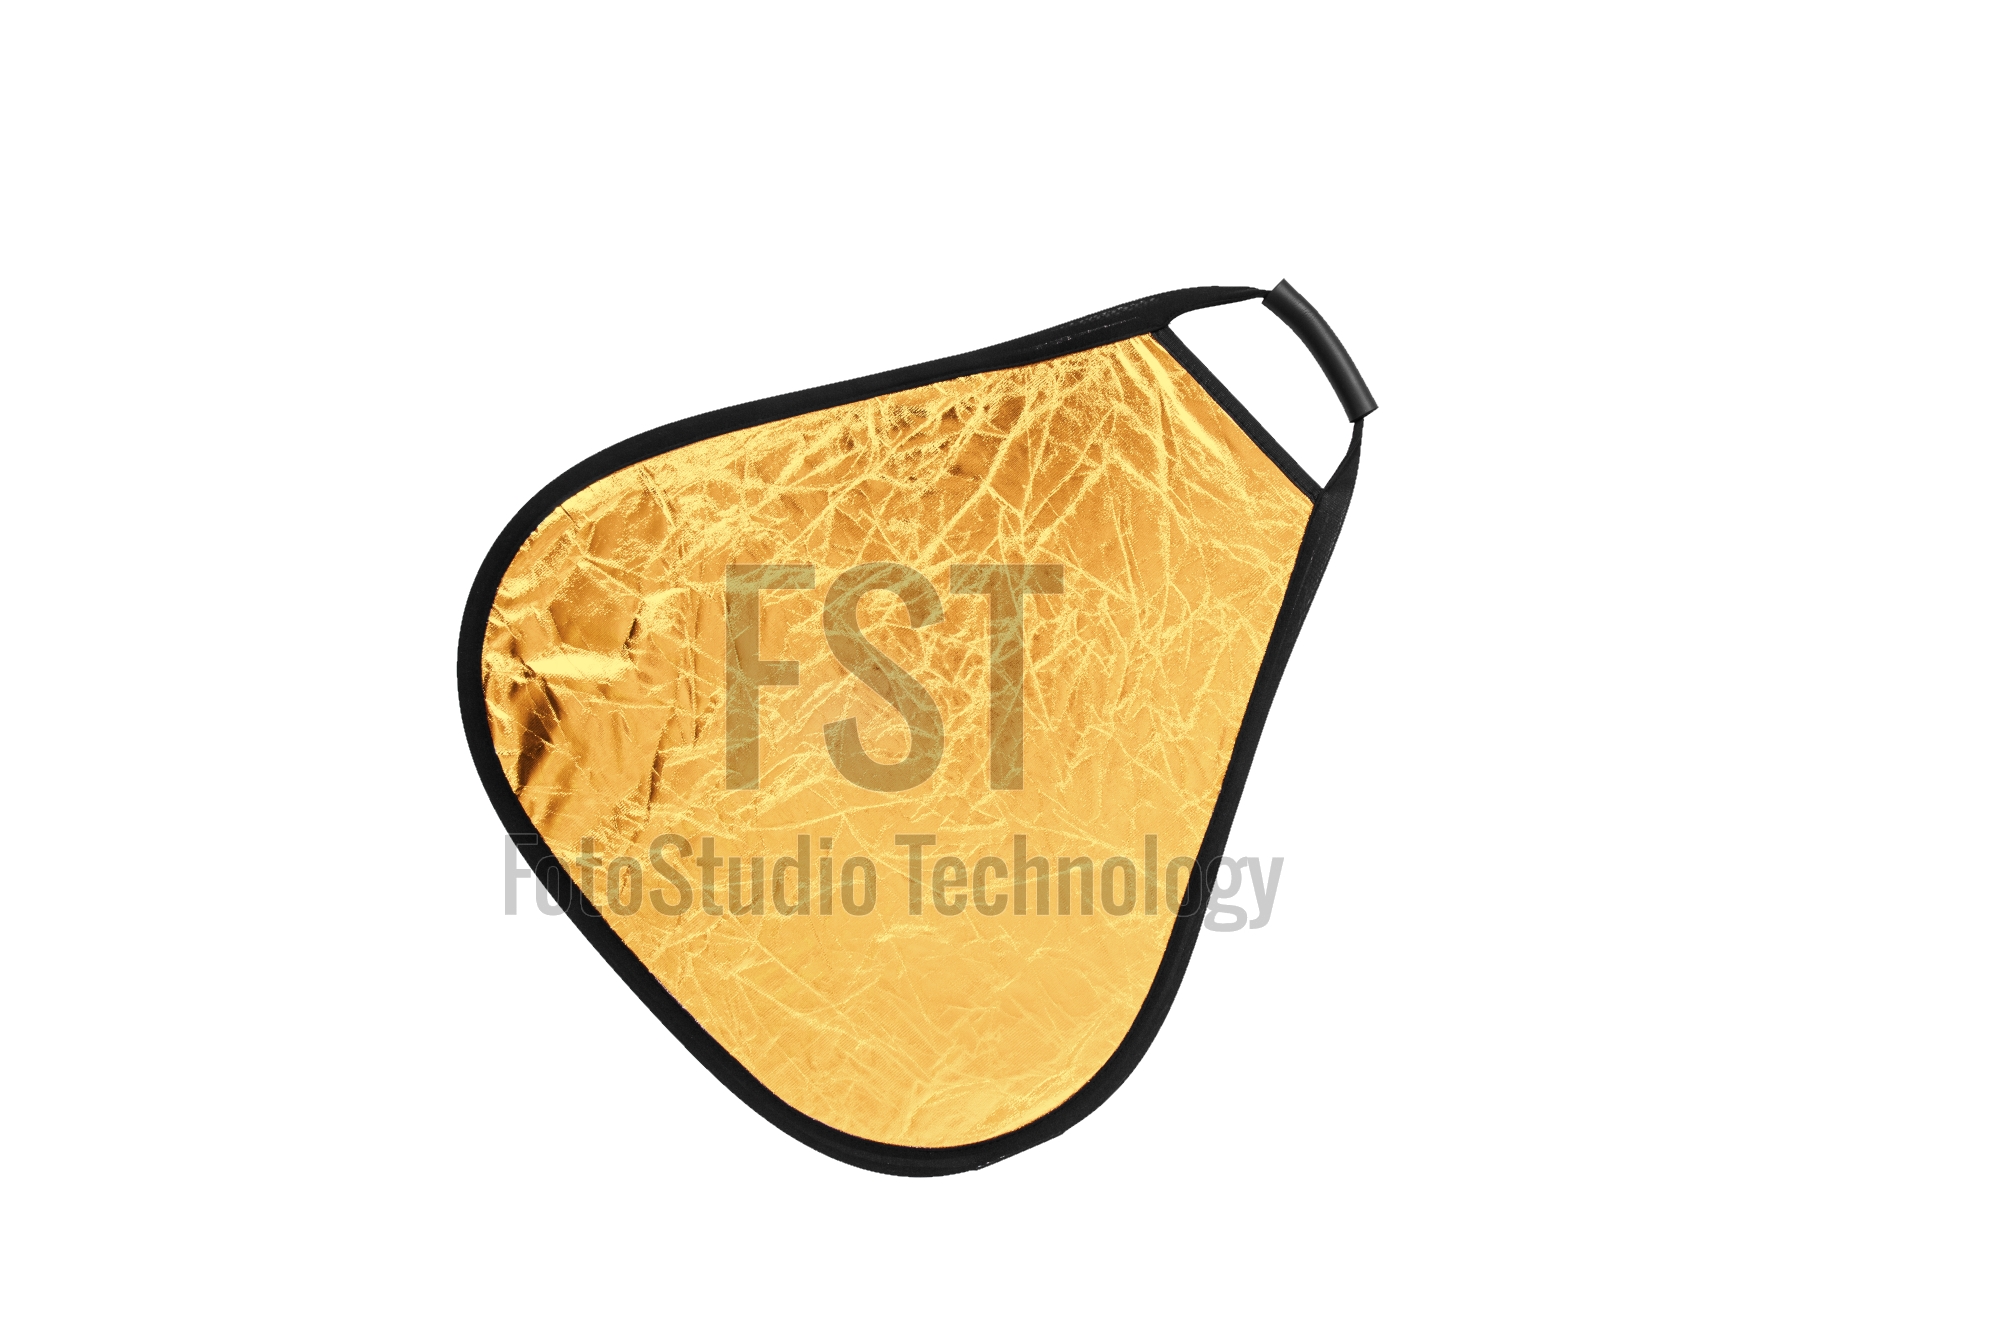 Отражатель FST TR-051 60 золото/серебро	